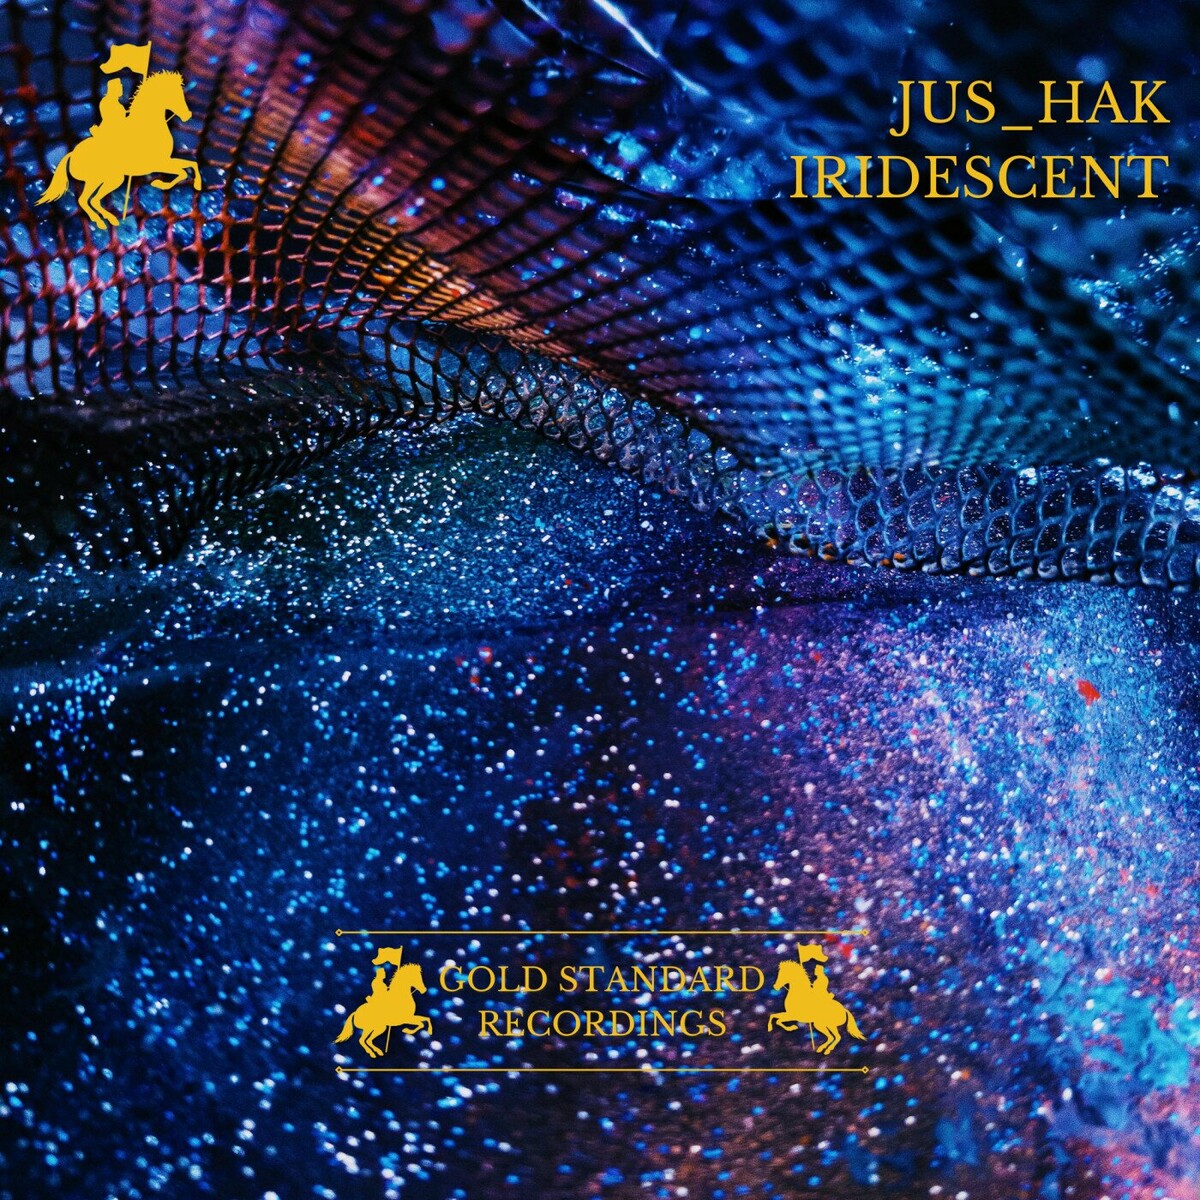 Jus_Hak - Iridescent (Original Mix)